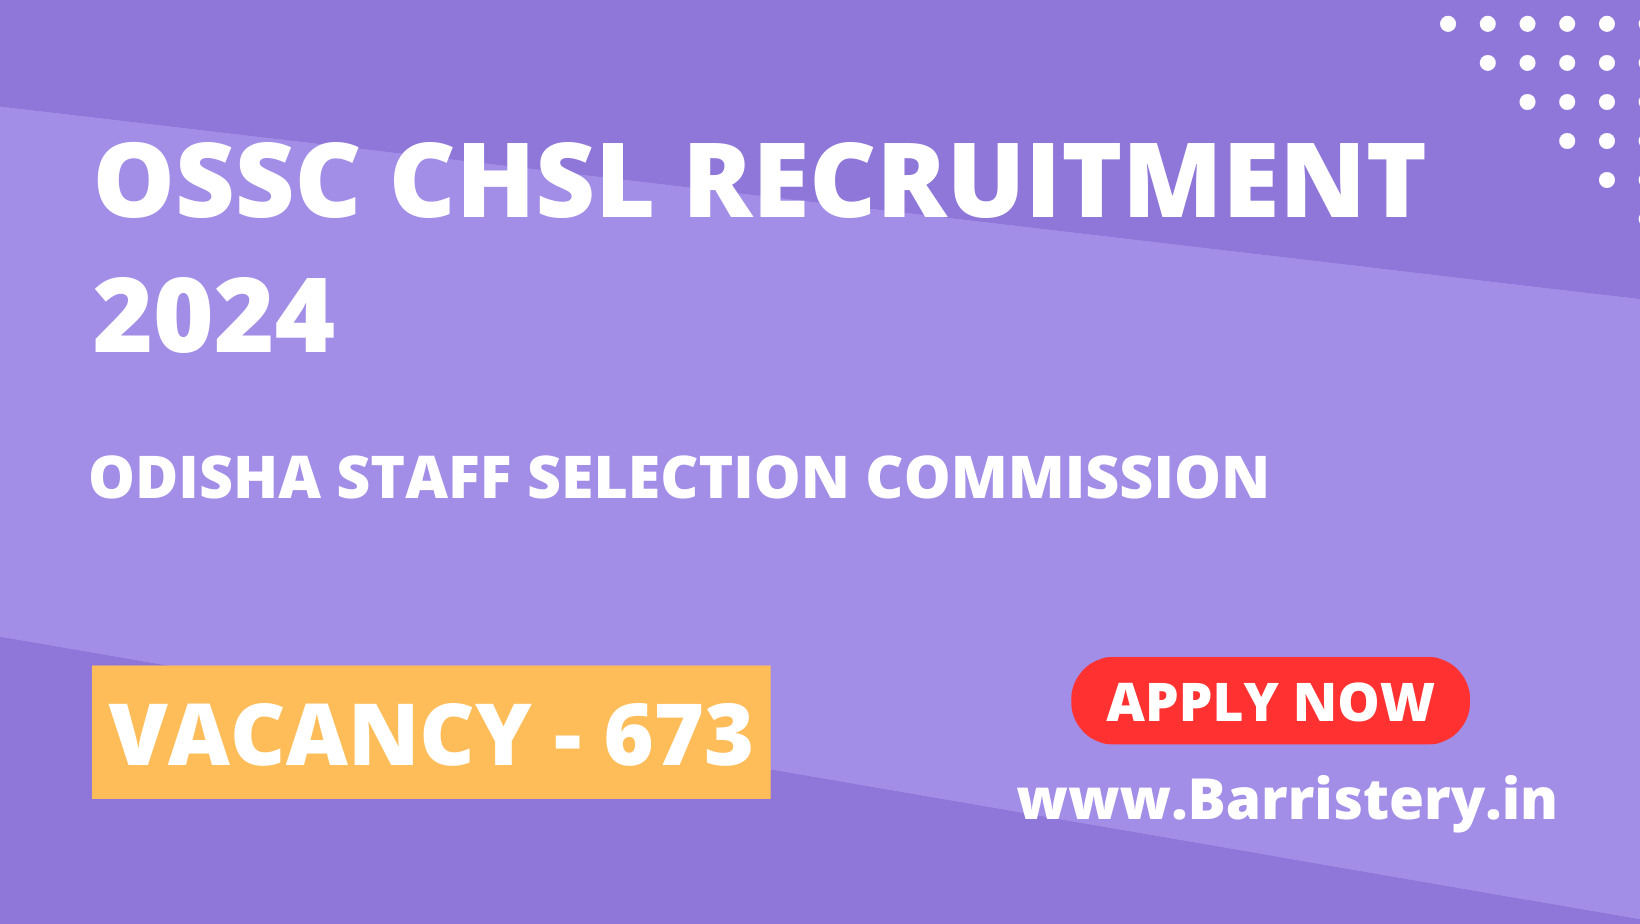 OSSC CHSL Recruitment 2024 for 673 Vacancies